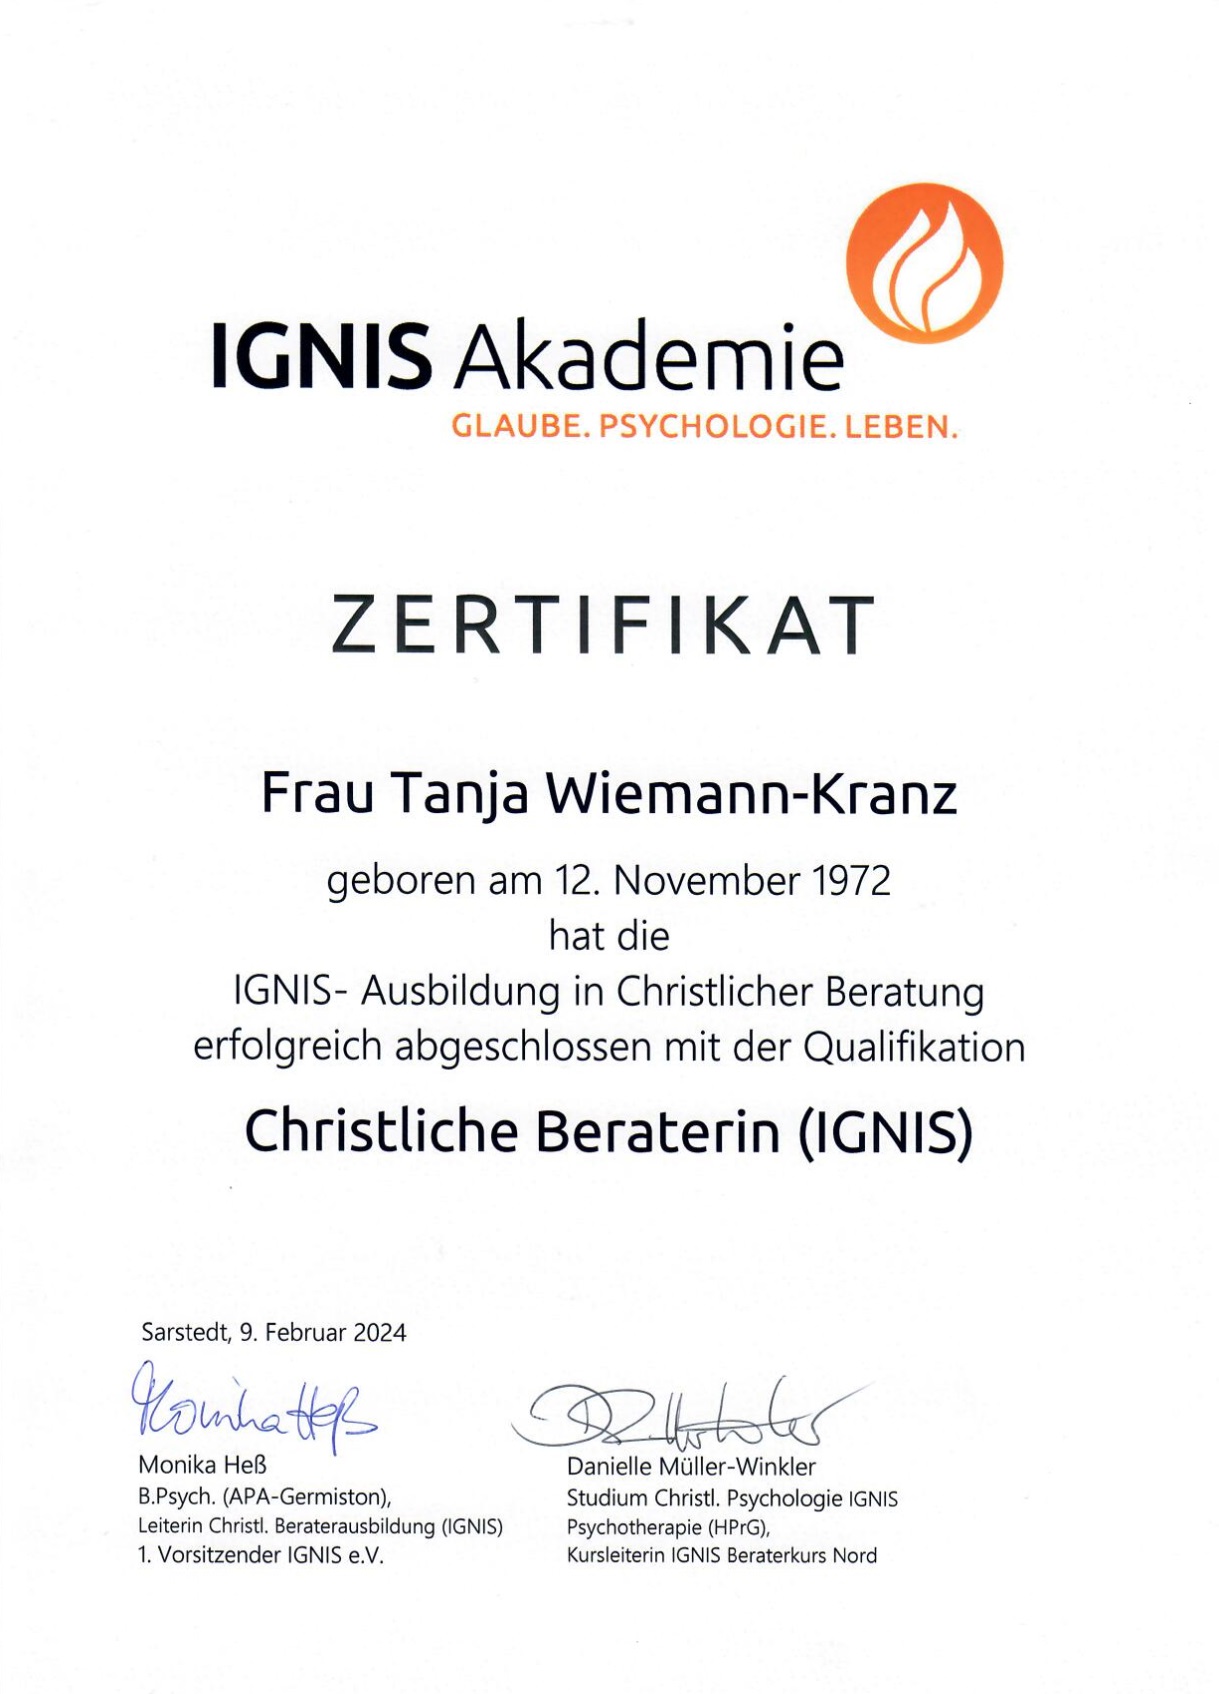 Hier sollten Sie eine Abbildung des Zertifikats über meine Ausbildung zur Christlichen Beraterin (IGNIS) sehen können.